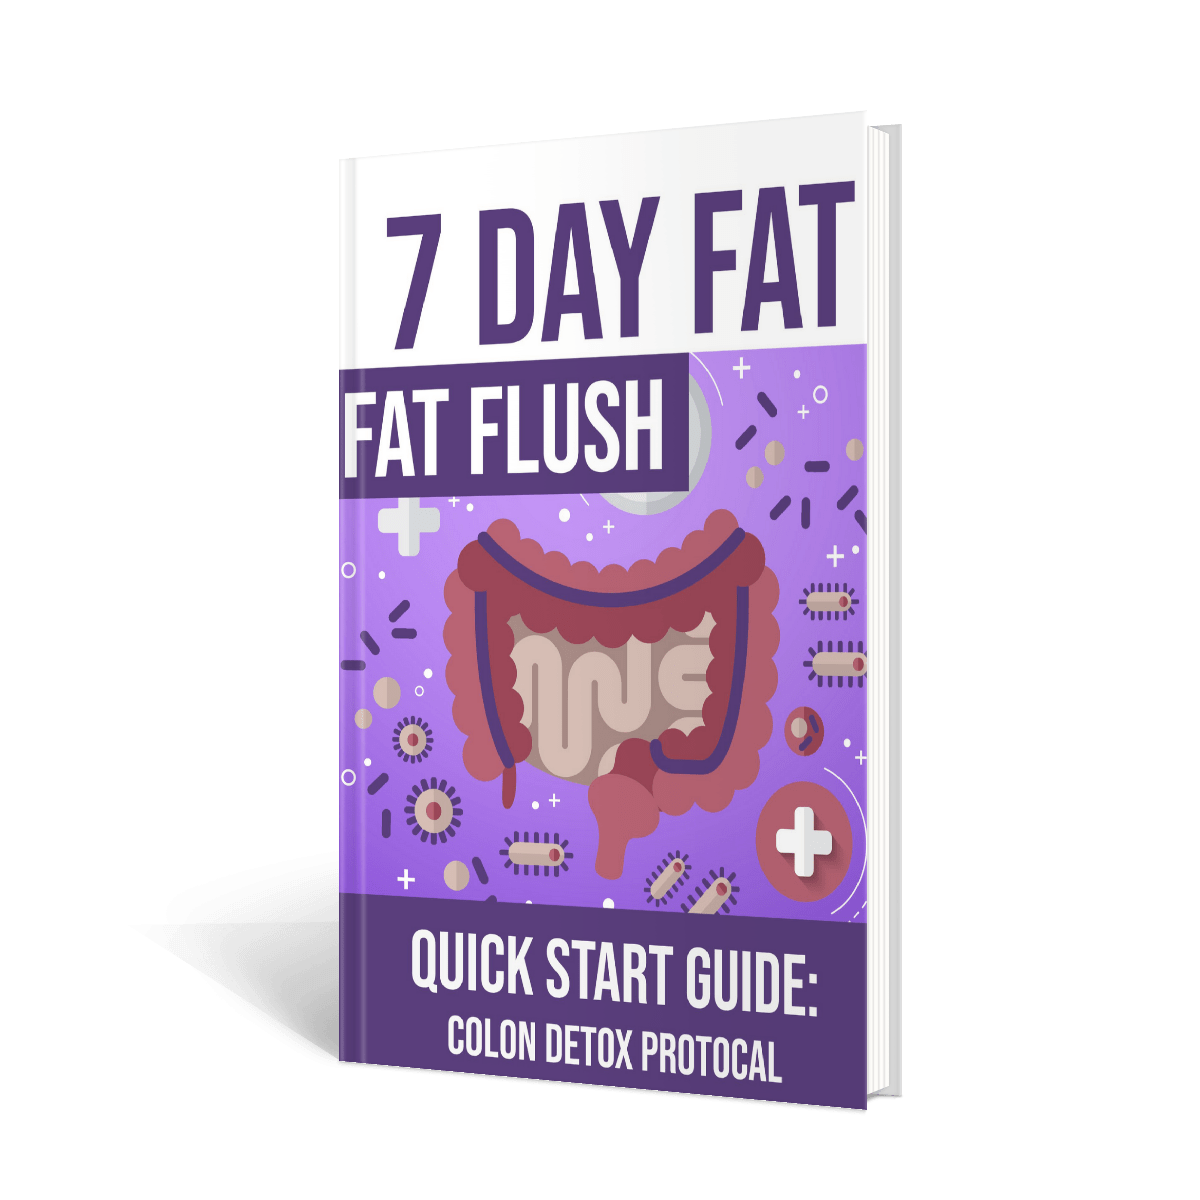 FREE e-book "7 Day Fat Flush" 3